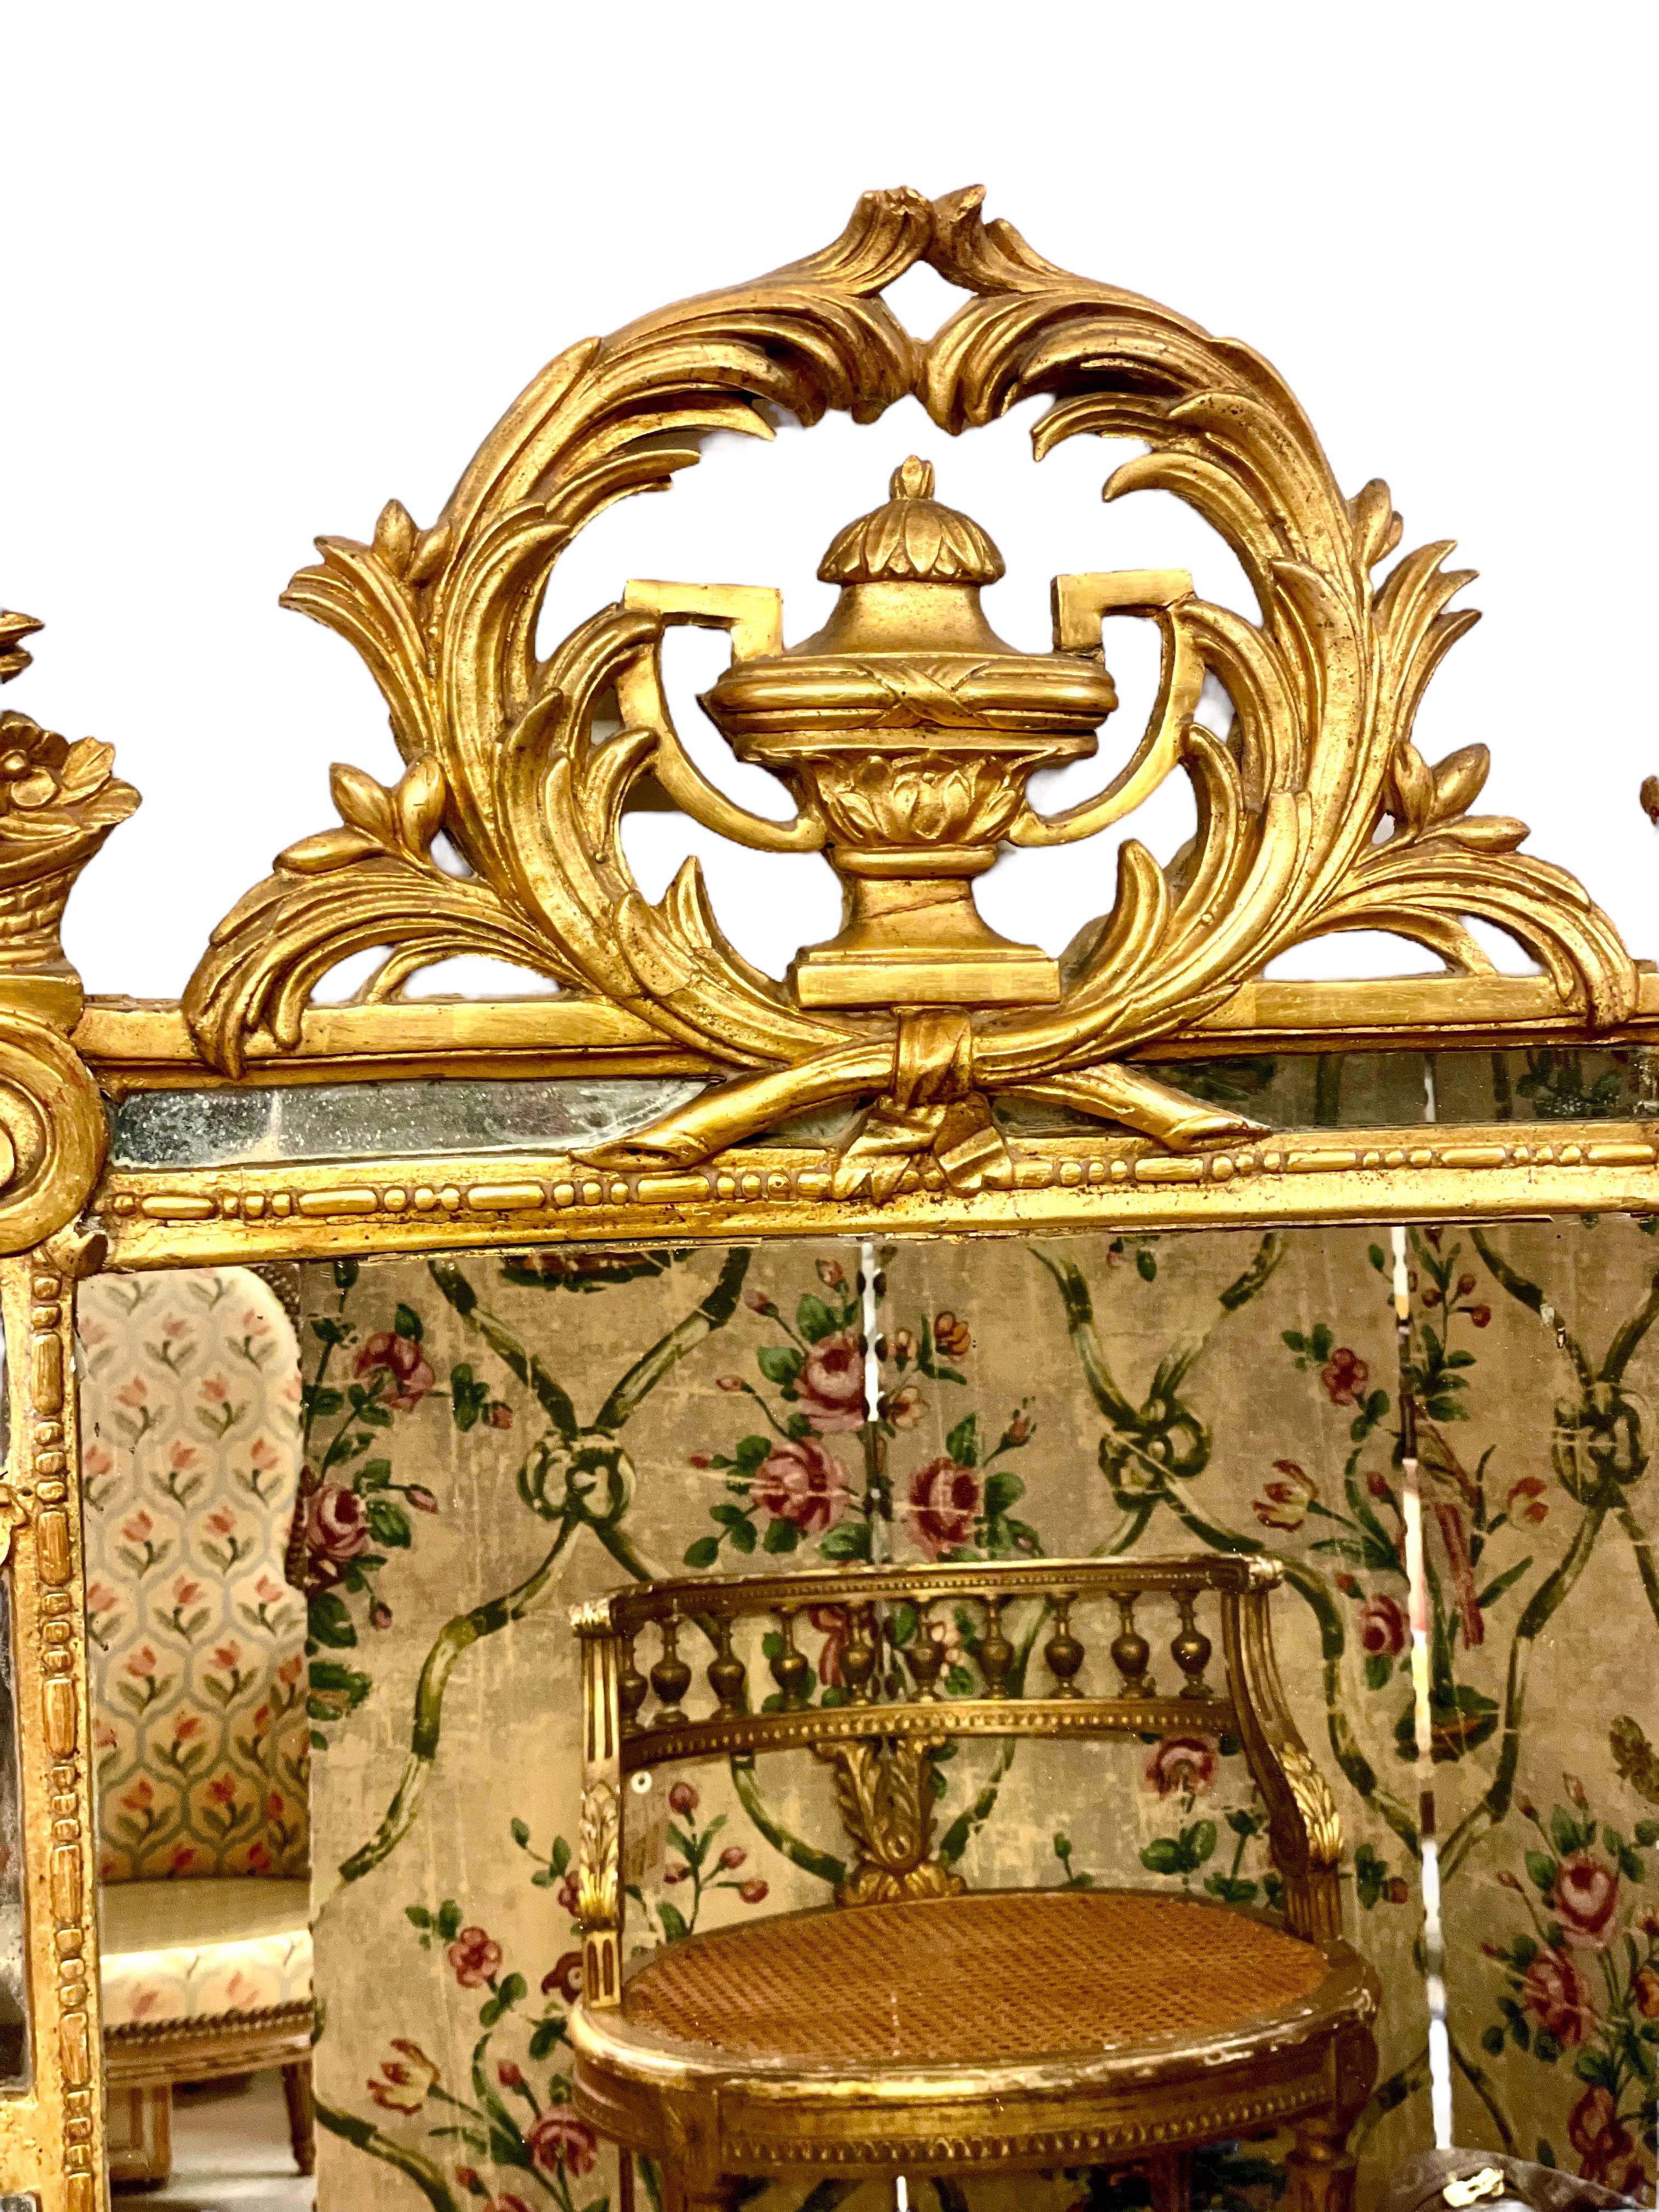 Exceptionnel miroir à parclose ou à coussin de la fin du XVIIIe siècle, dans un cadre en bois doré richement sculpté. Ce miroir rectangulaire est orné sur les quatre côtés de magnifiques motifs classiques sculptés à la main, notamment des gerbes